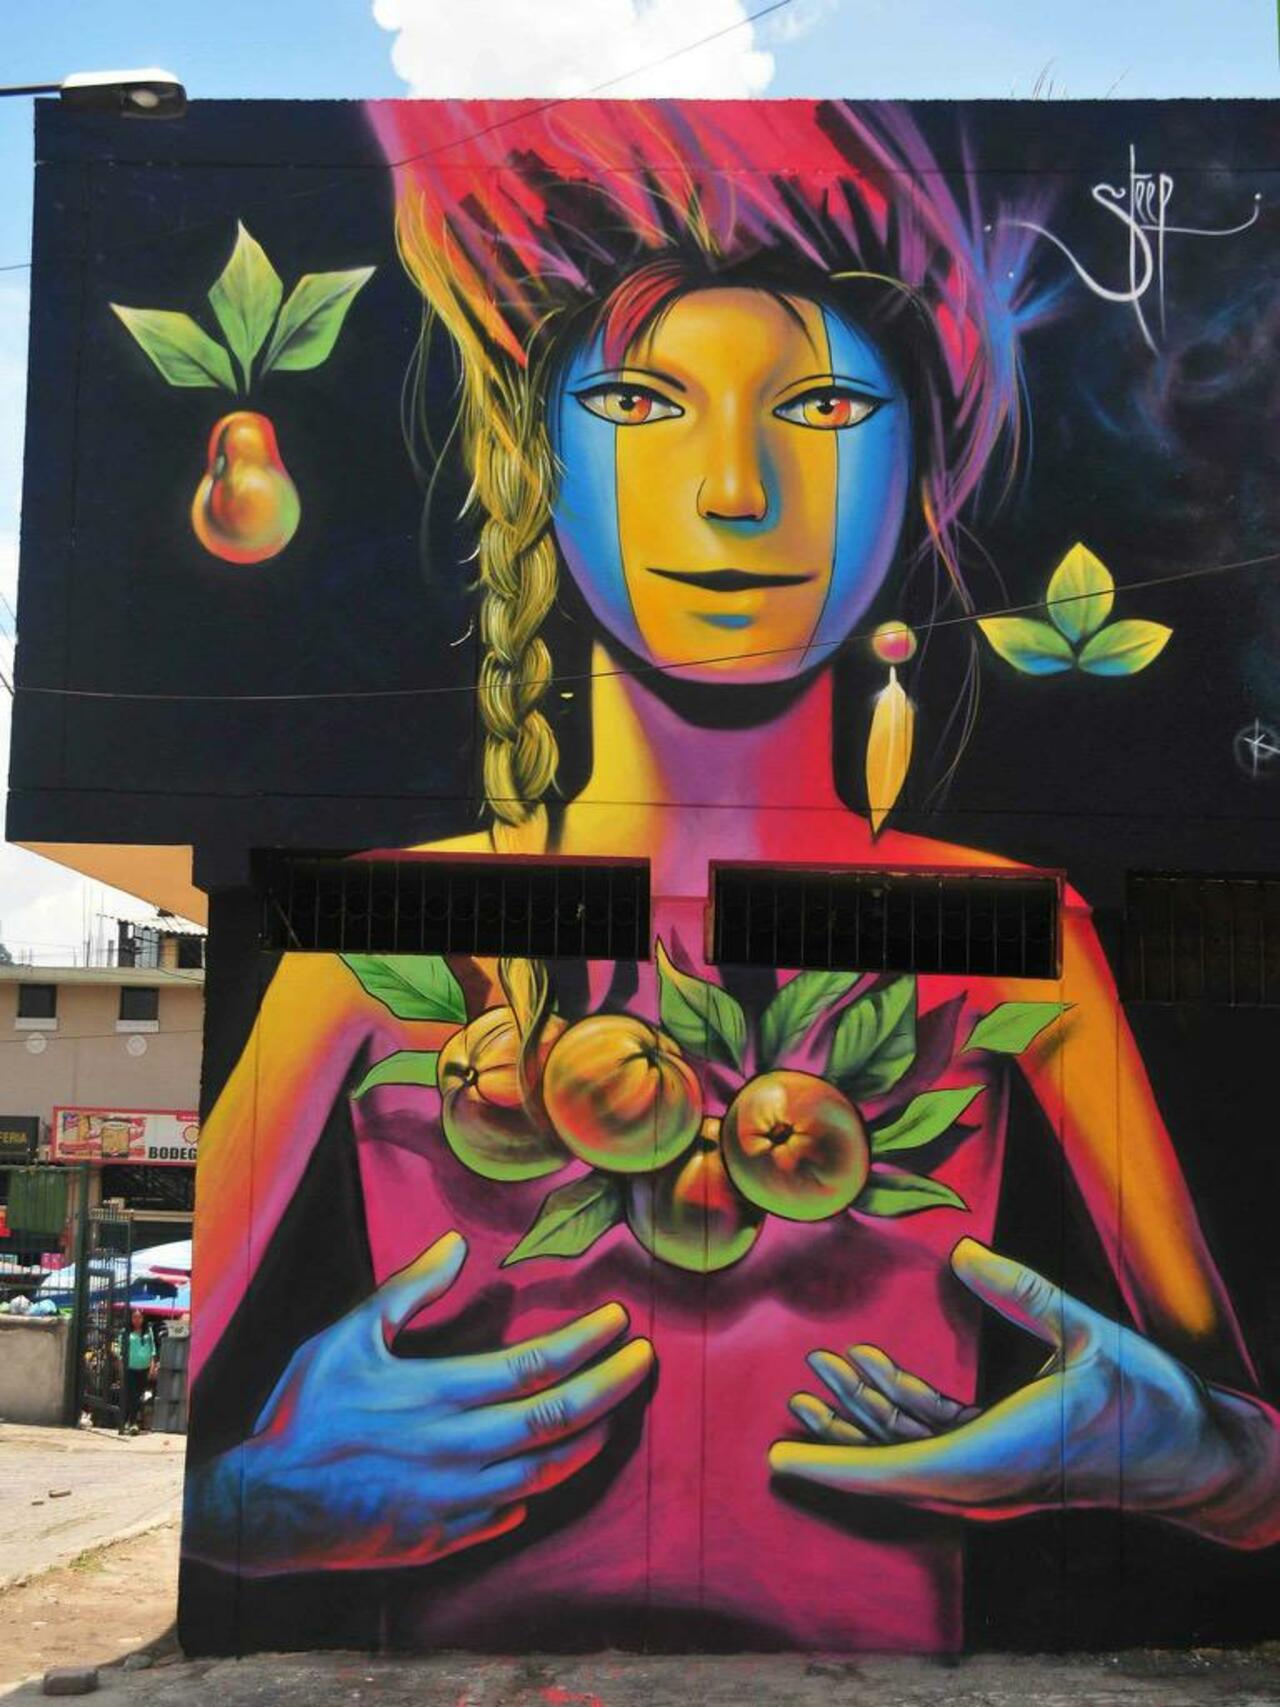 Street Art by Steep

#art #graffiti #mural #streetart http://t.co/BYmlMTw31Q